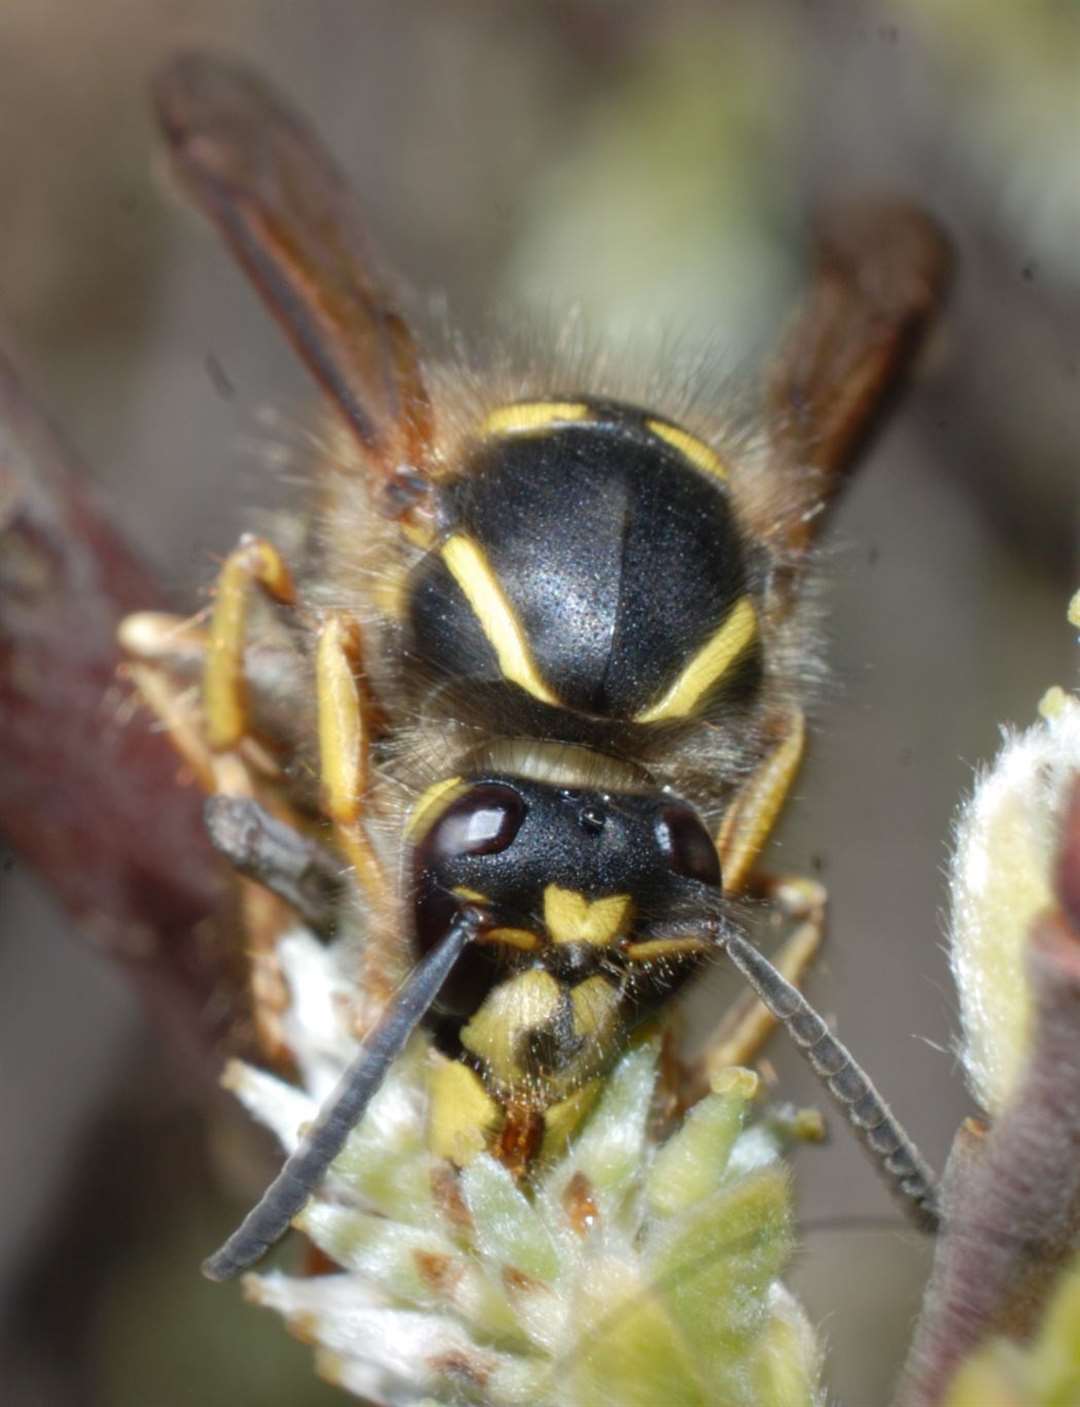 The Saxon Wasp